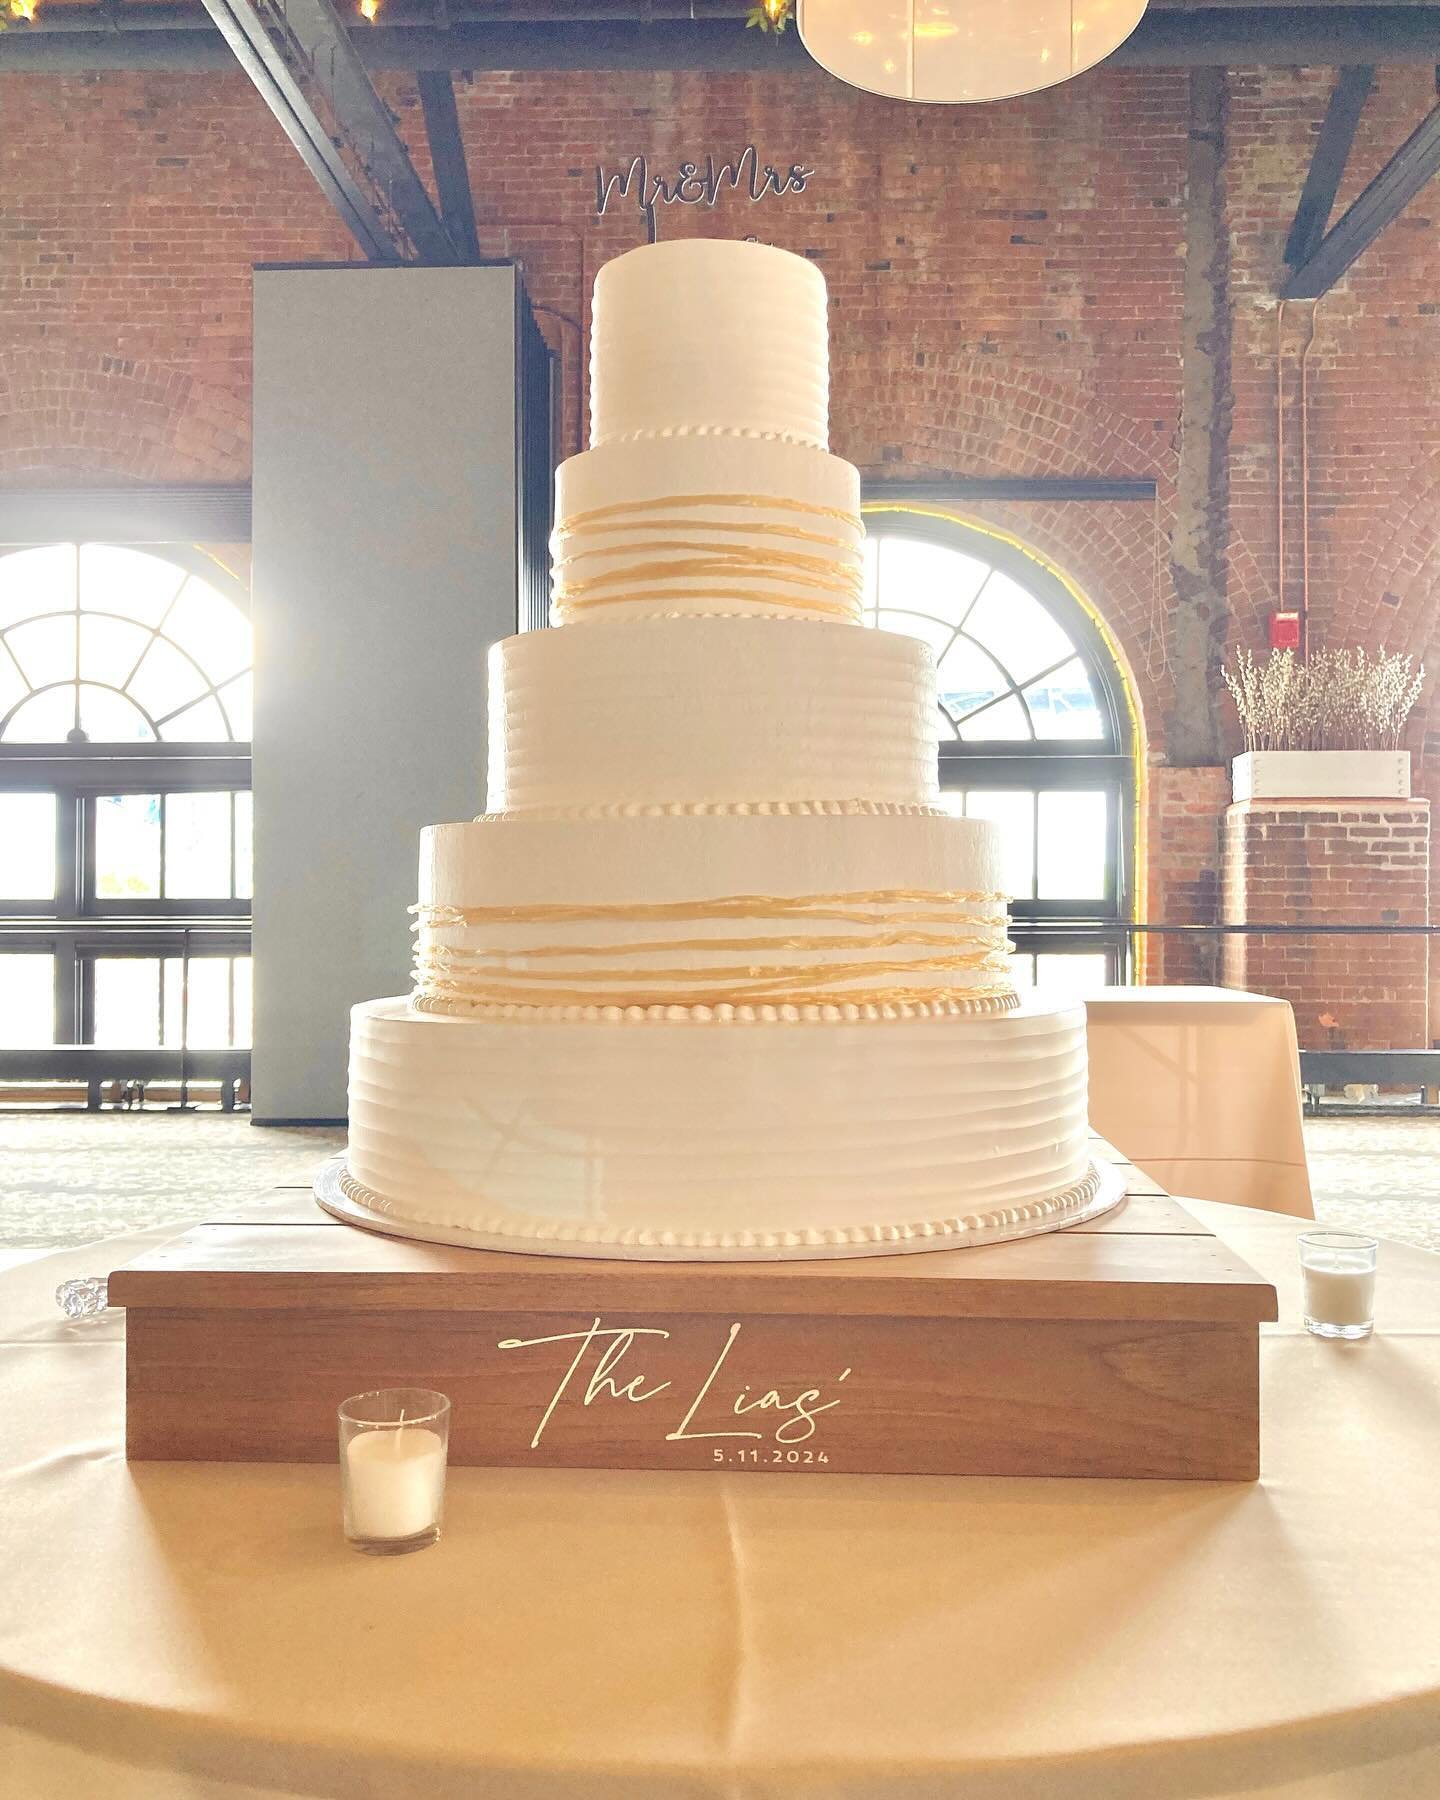 Happy Wedding Cake Monday🍰💍

.

.

.

.

#cleveland #clevelandbakery #bakery #cakedecorating #treatyourself #womeninbusiness #shoplocal #family #womenownedbusiness #shoplocal #smallbusiness #wedding #weddingplanning #weddingcake